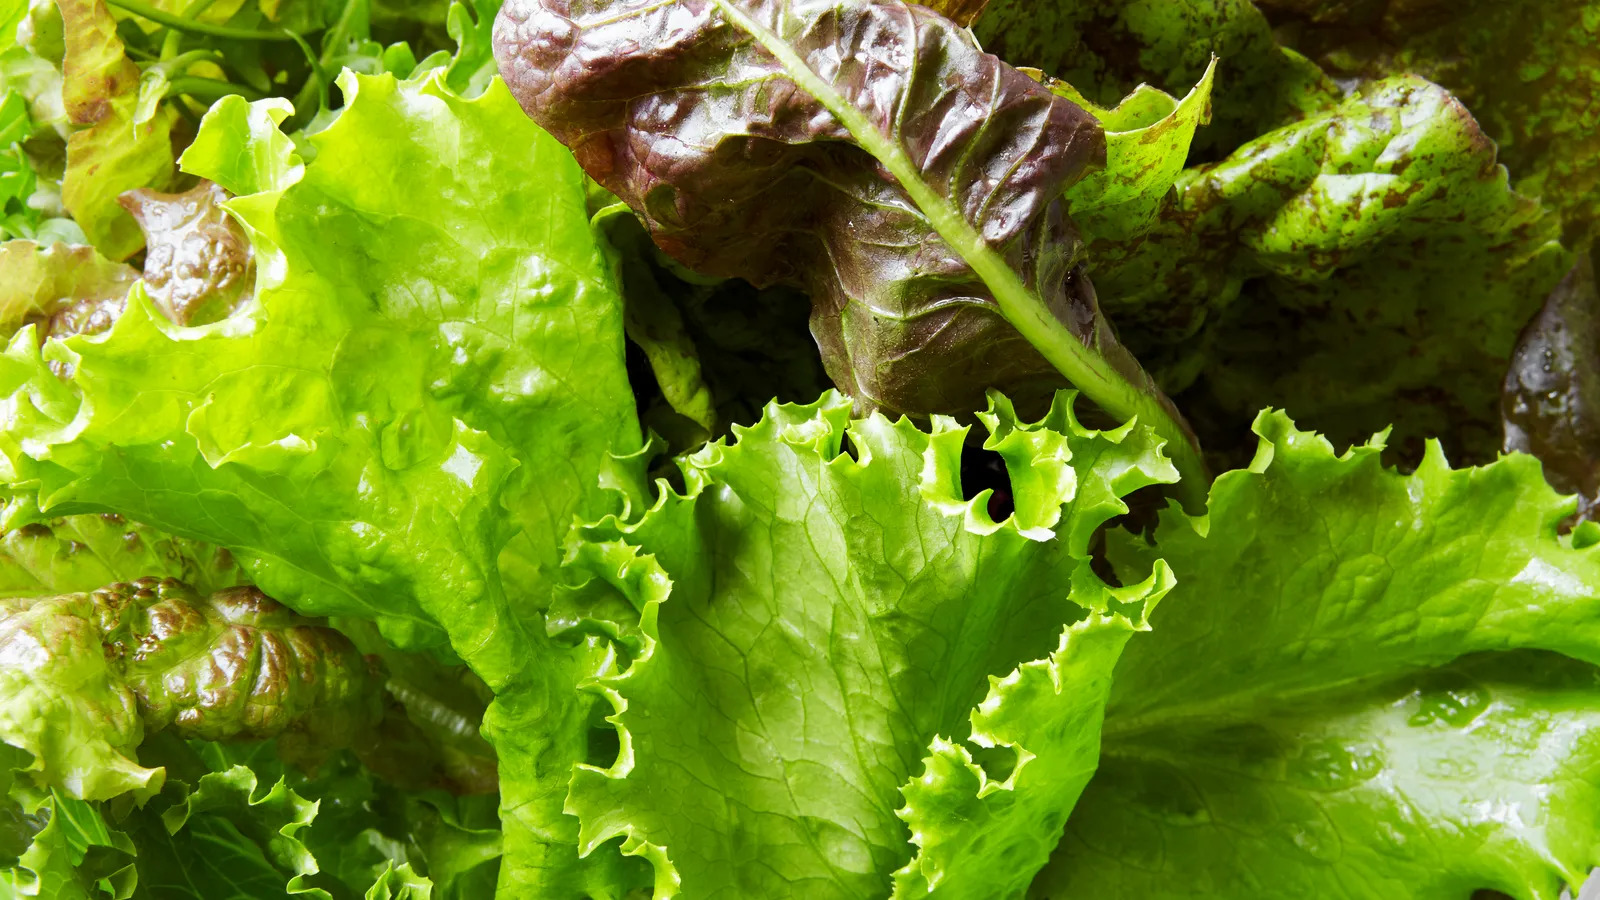 Salată verde: un ghid pentru creștere economică și irigare durabilă